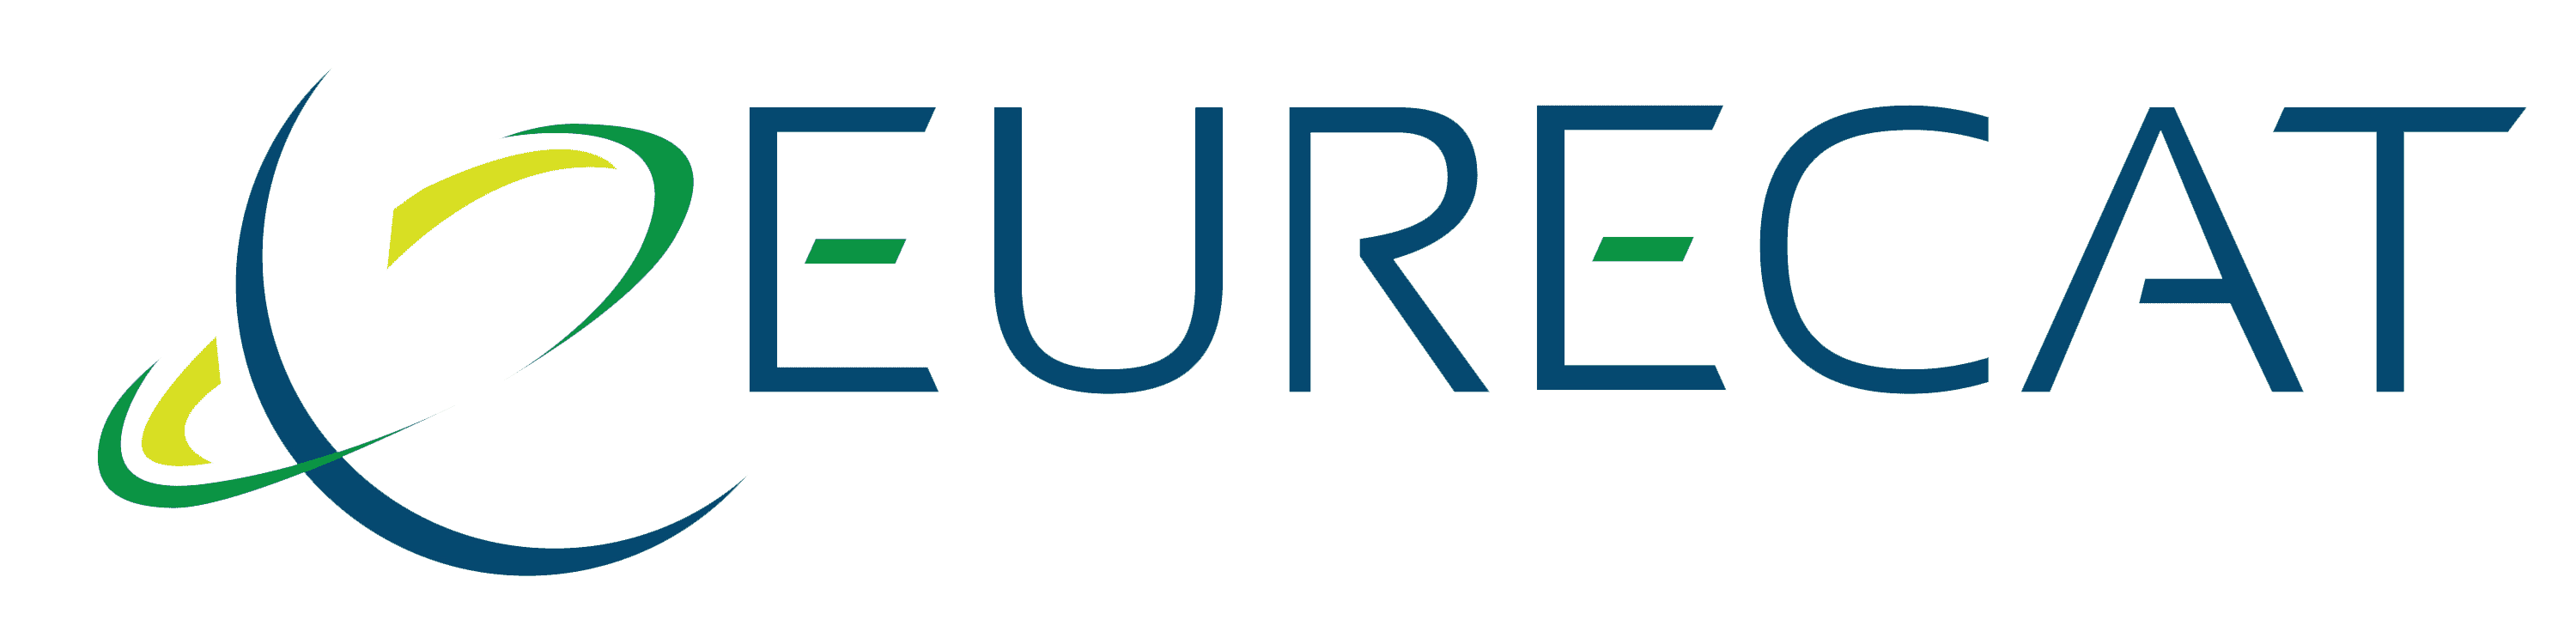 Eurecat transparent Logo